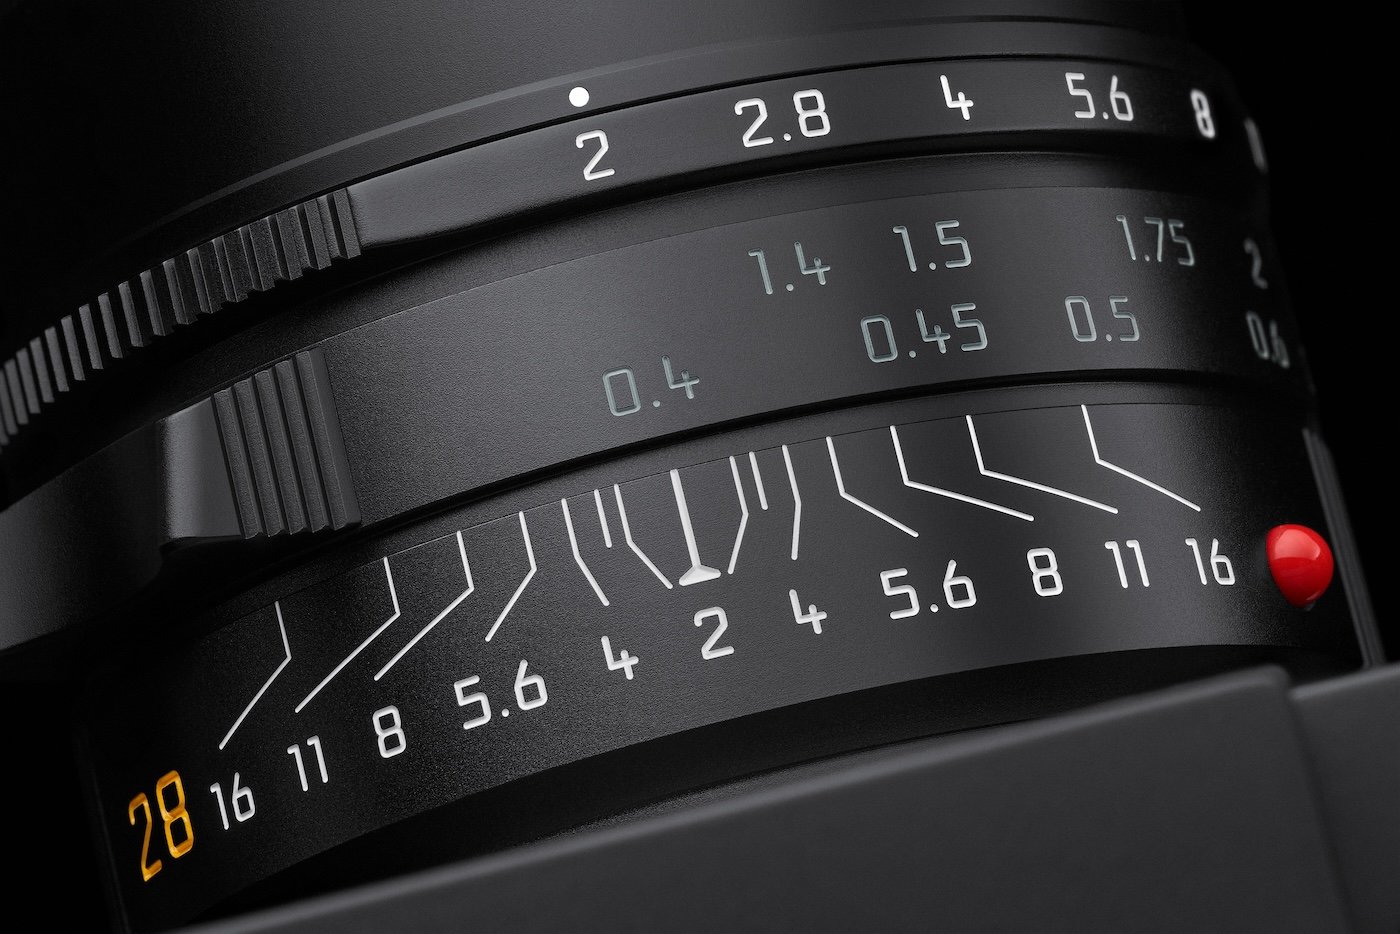 Leica Summicron-M 28 f/2 ASPH